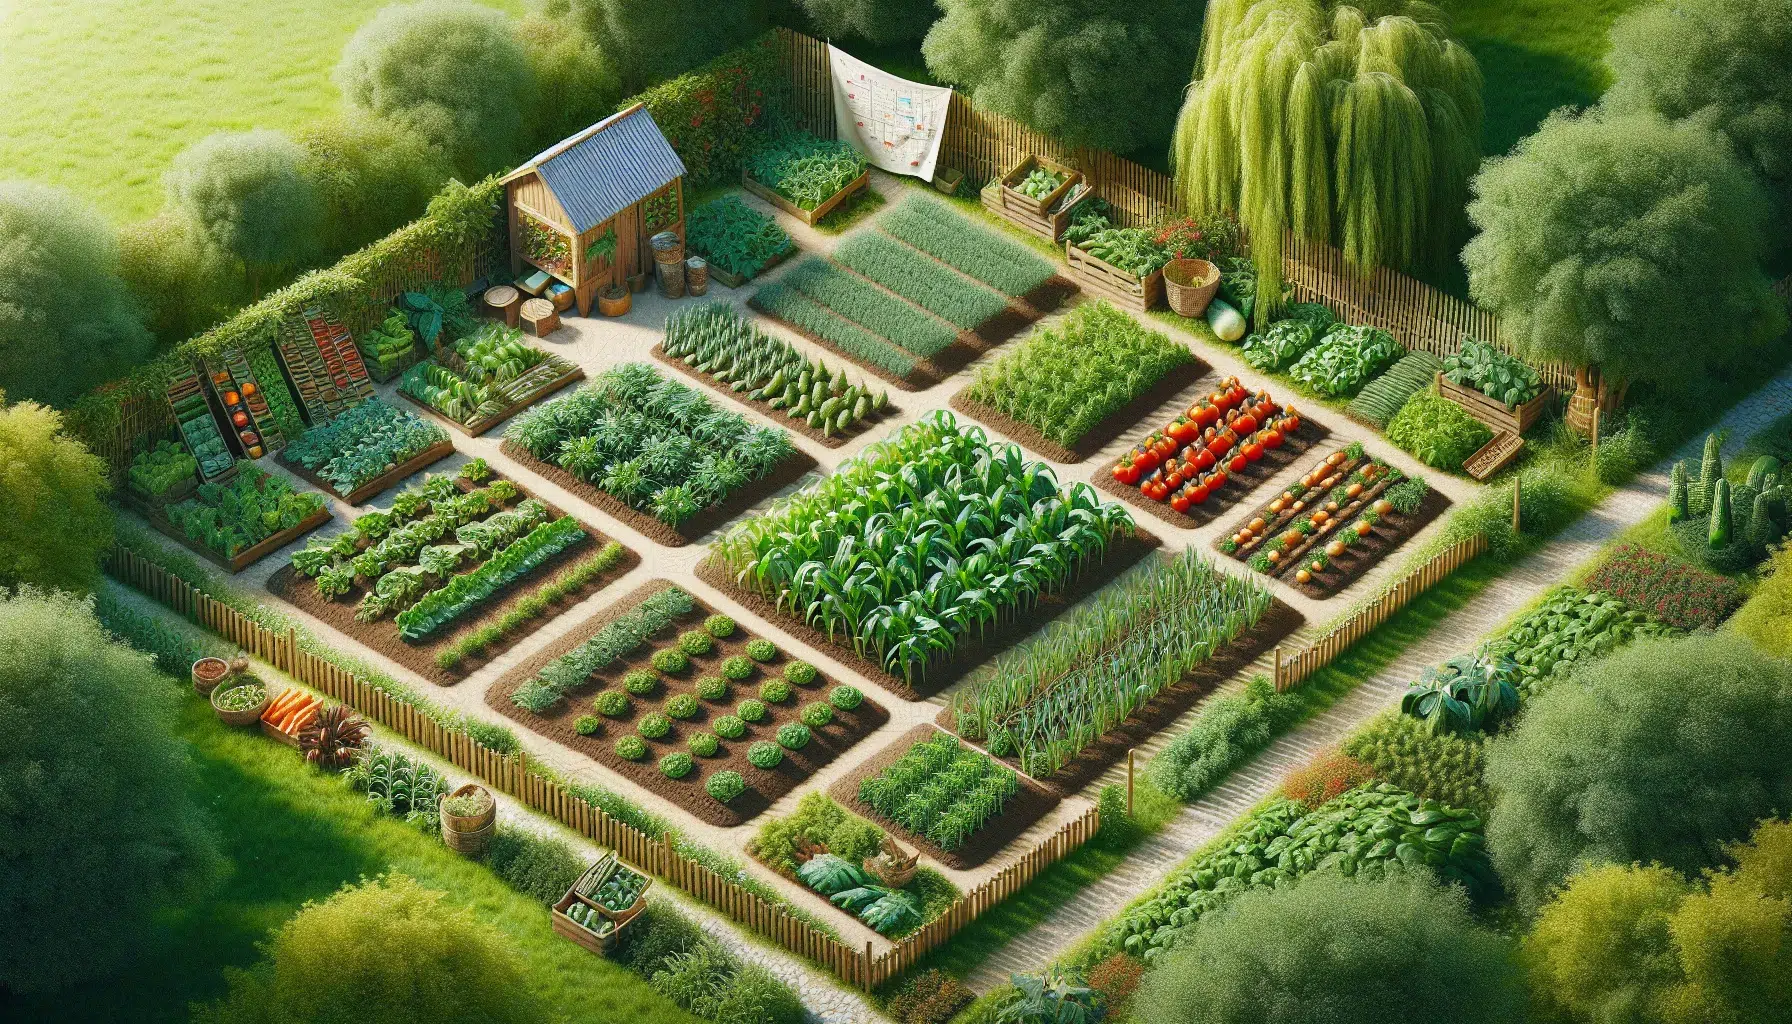 Imagen de un huerto con variedad de cultivos organizados en diferentes parcelas, representando la planificación exitosa de la rotación de cultivos en el huerto.